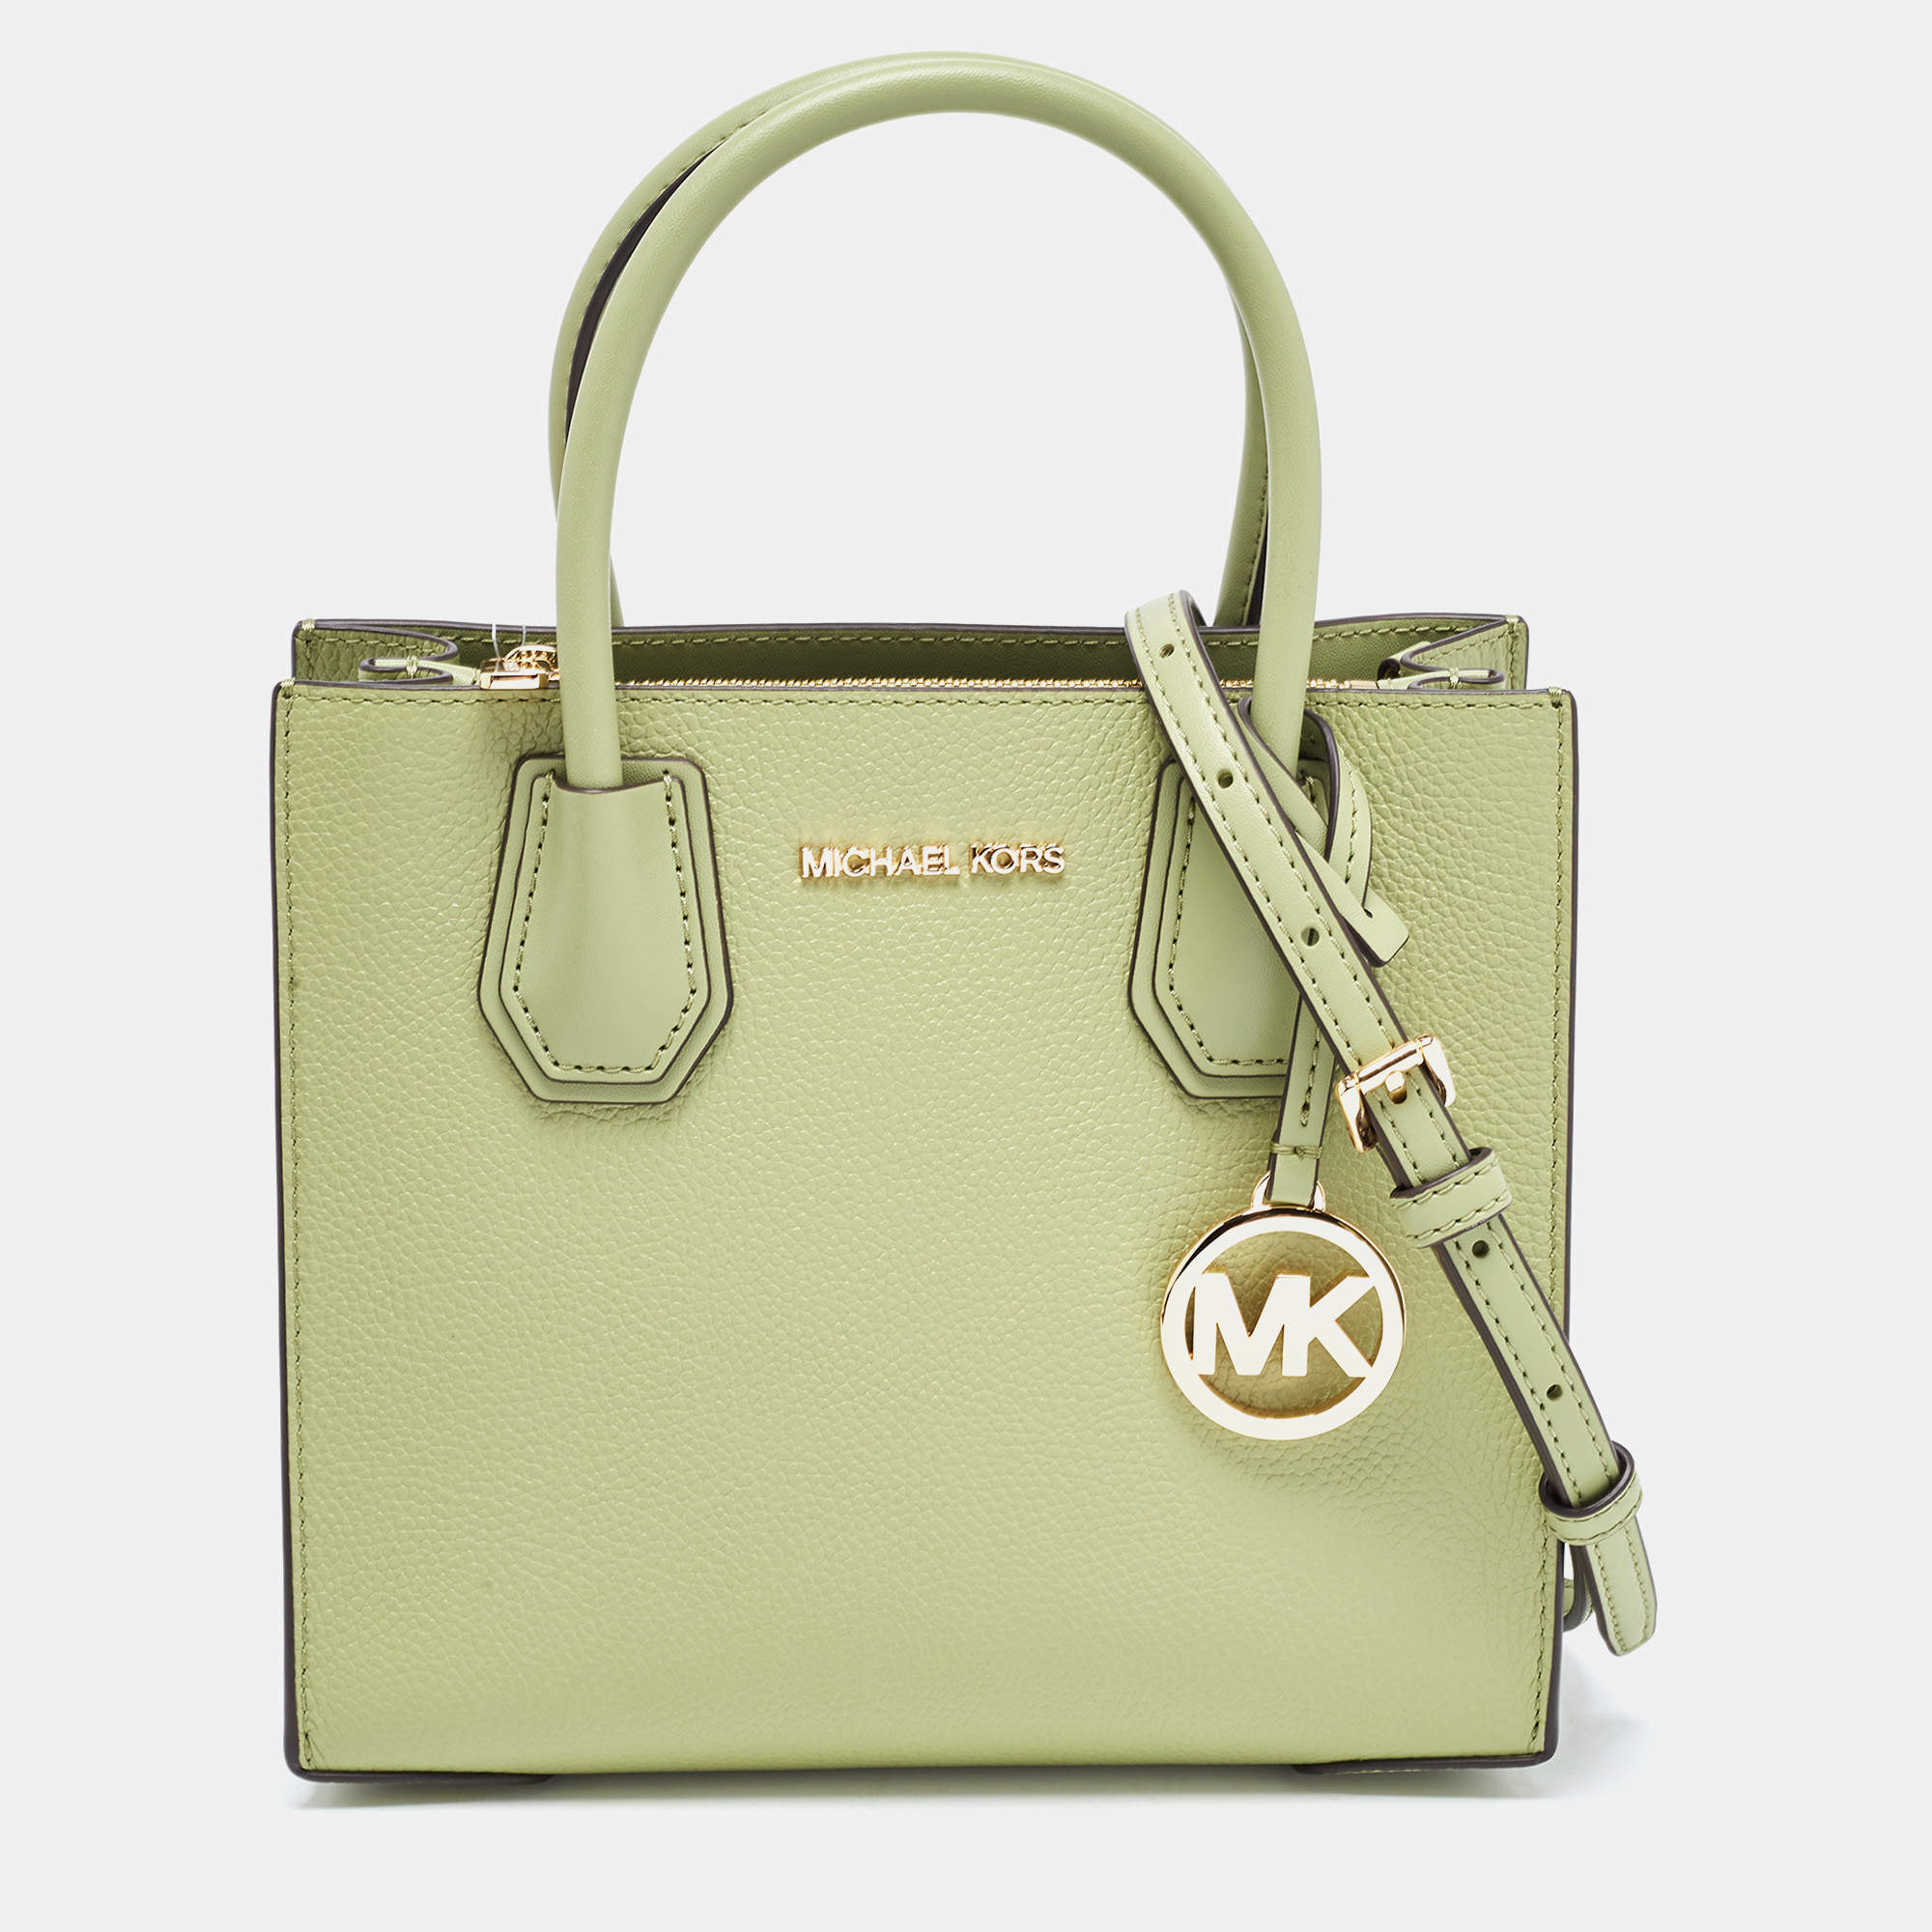 Michael Kors Bags | Michael Kors Large Double Zip Wallet Wristlet | Color: Brown/Pink | Size: Os | Designpalace's Closet